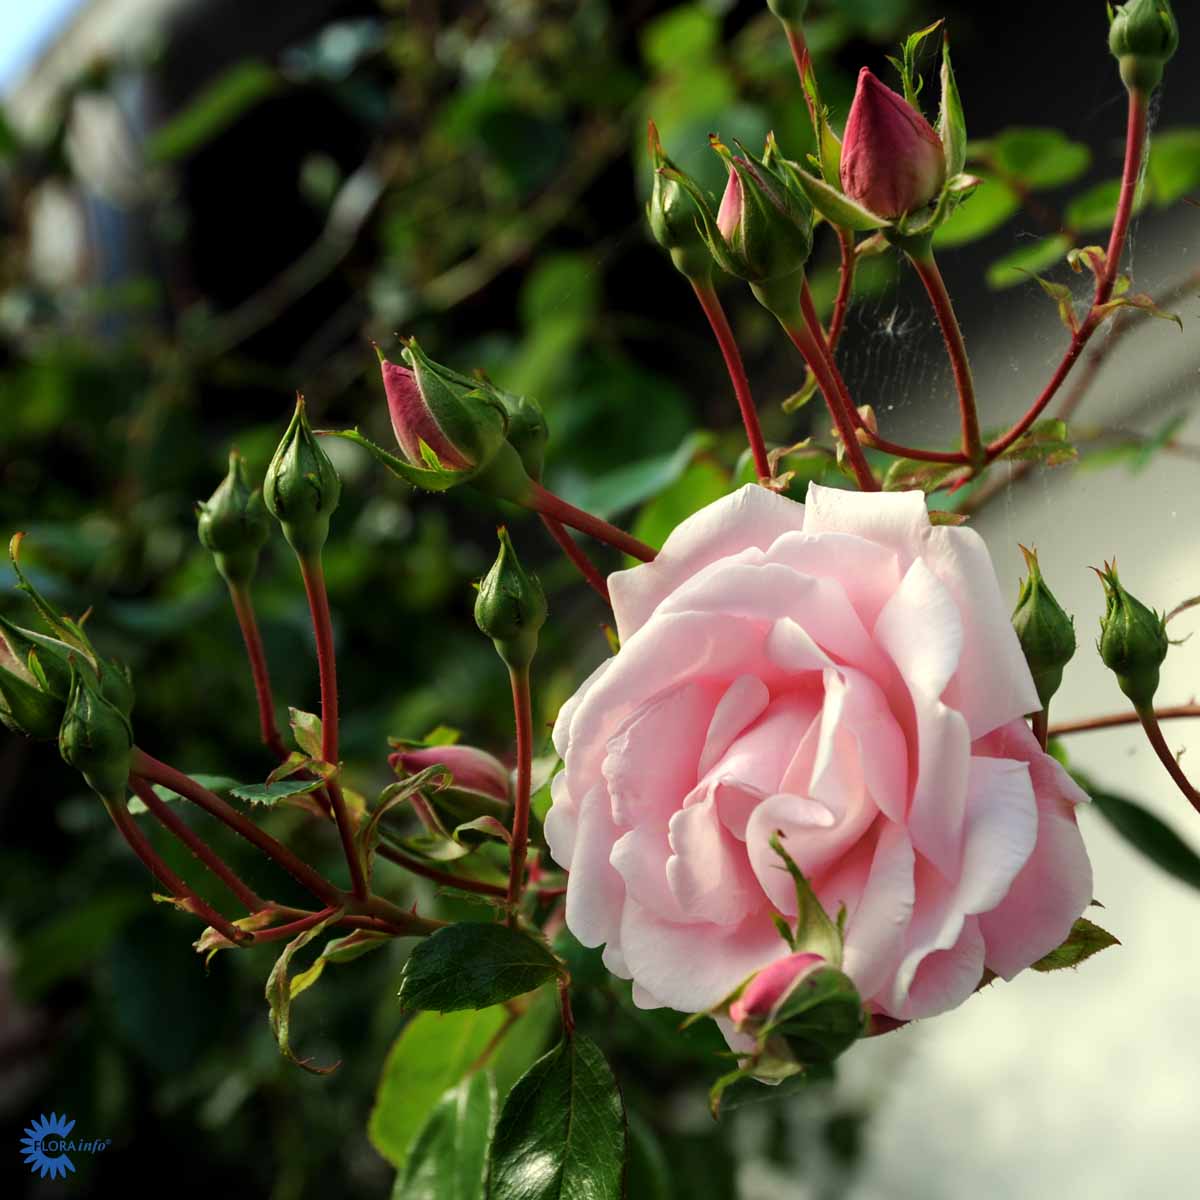 Verdens mest solgte slyngrose - en rose, der fortjener en fantastisk plads i haven. Rosen blomstrer med massevis af flotte lyserøde rosen-blomster og der bliver mørkere og mørkere mod centrum.  Rosen er meget blomsterrig og blomstrer kraftigt